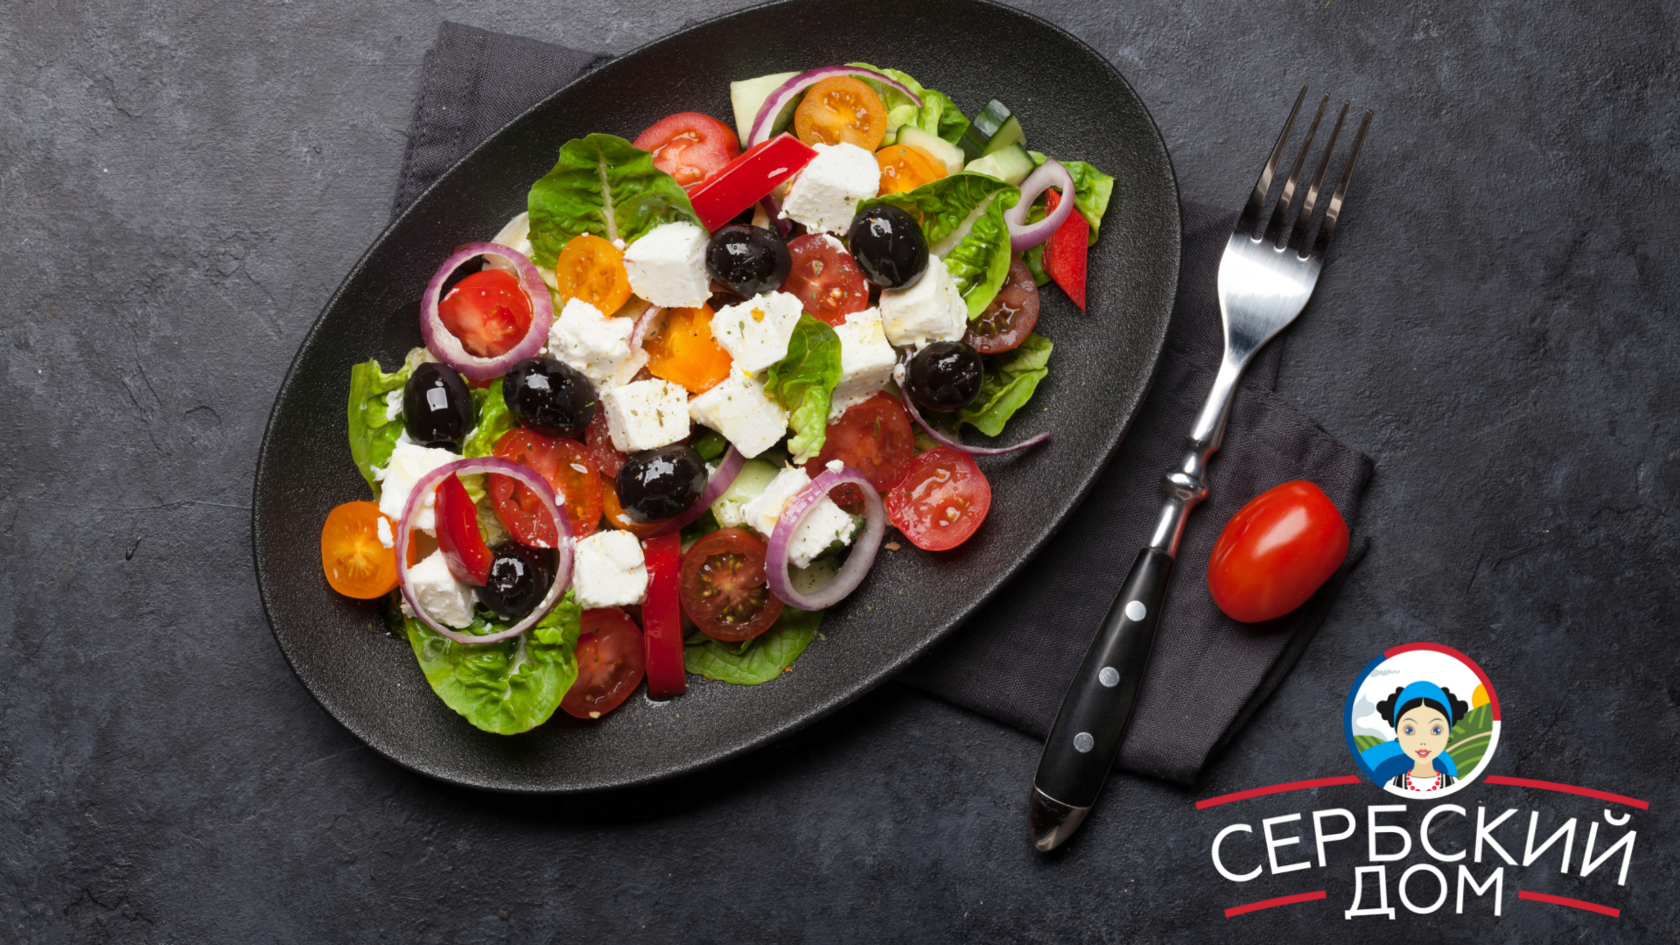 Греческий салат – калорийность, польза и диетические свойства, пищевая ценность